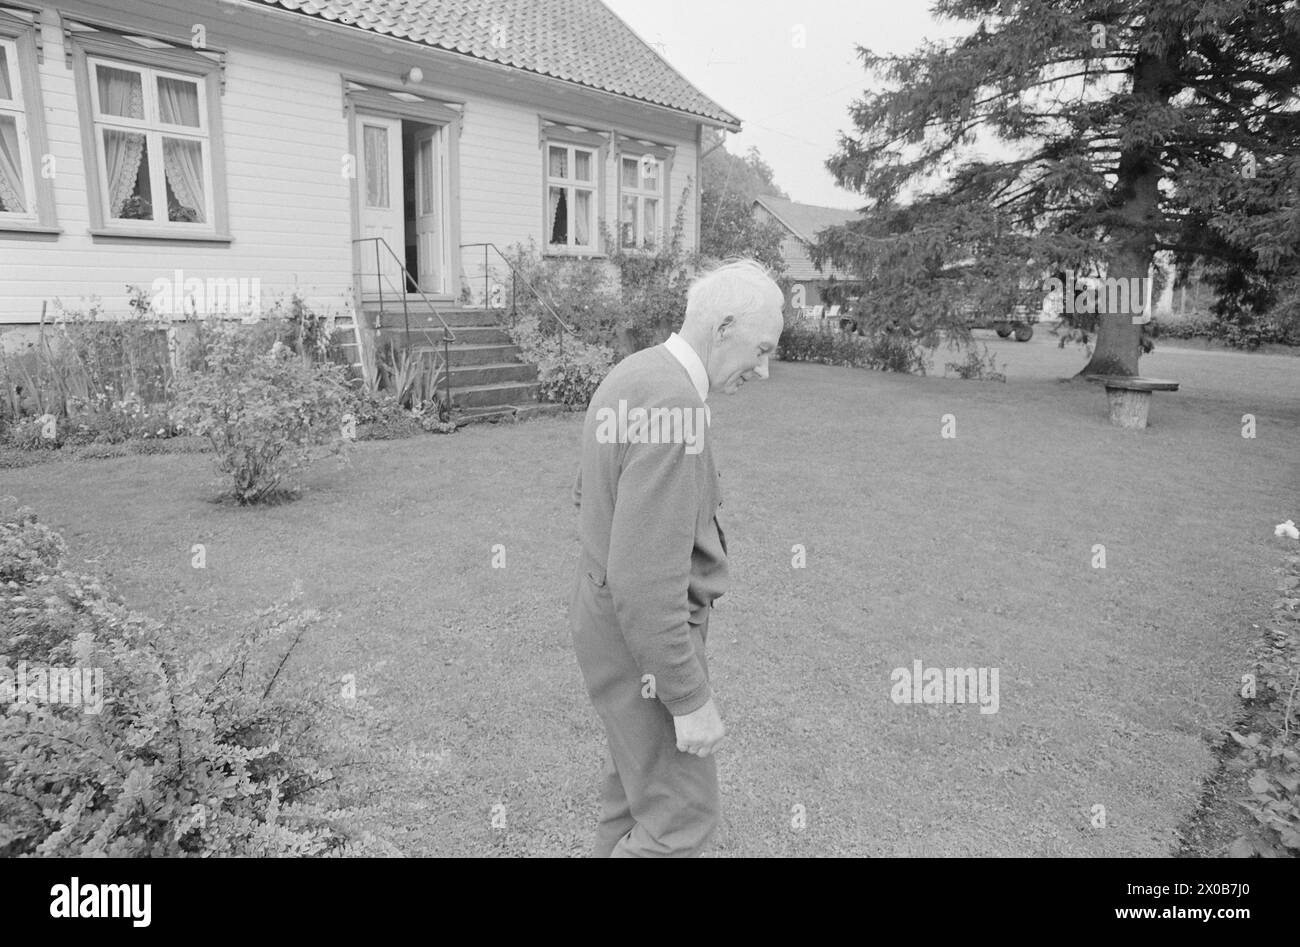 Aktuell 36-2-1973: De Holder kokenDet er er 57 år siden Einar Gerhardsen für første Gang deltok i en valgkamp. Nå er han 75 år, Männer slåss fortatt i fremste linje. Også i andre partier er de gamle med. Kjell Bondevik, 72 år, og Bent Røiseland, 71 år, Spiller viktige Roller i kampen. Aktuell har fulgt hver av dem én dag. Røiseland slappet av hjemme i Holum, tl sønnen kjørte Ham til et kveldsmøte i Vennesla. Foto: Aage Storløkken / aktuell / NTB ***Foto IKKE BILDEBEHANDLET*** dieser Text wurde automatisch übersetzt! Stockfoto